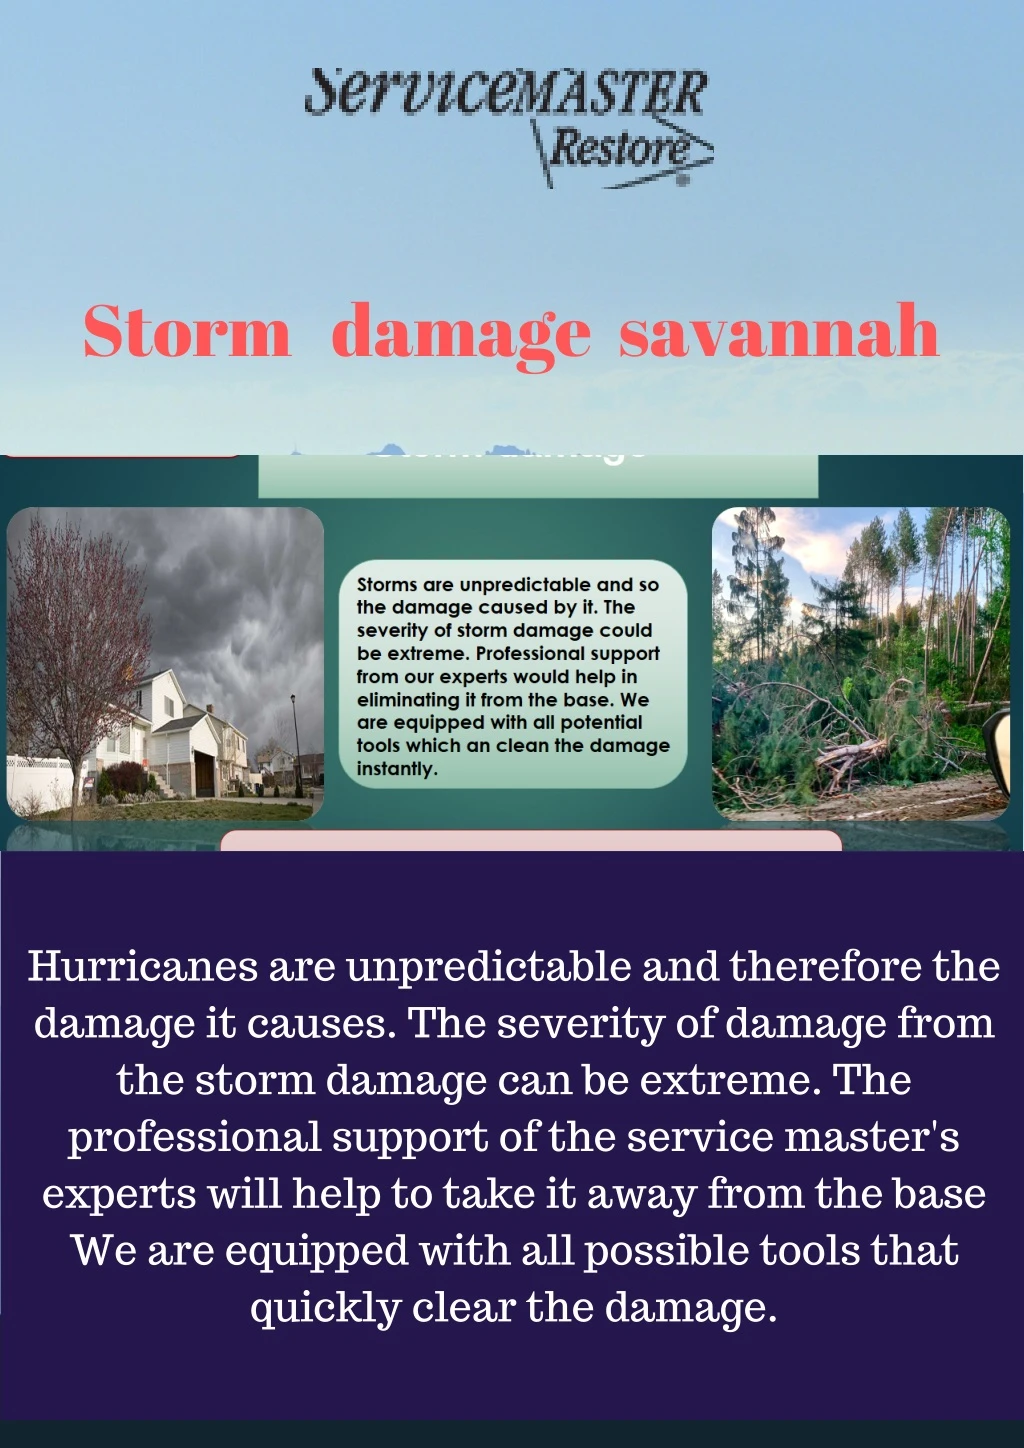 storm damage savannah